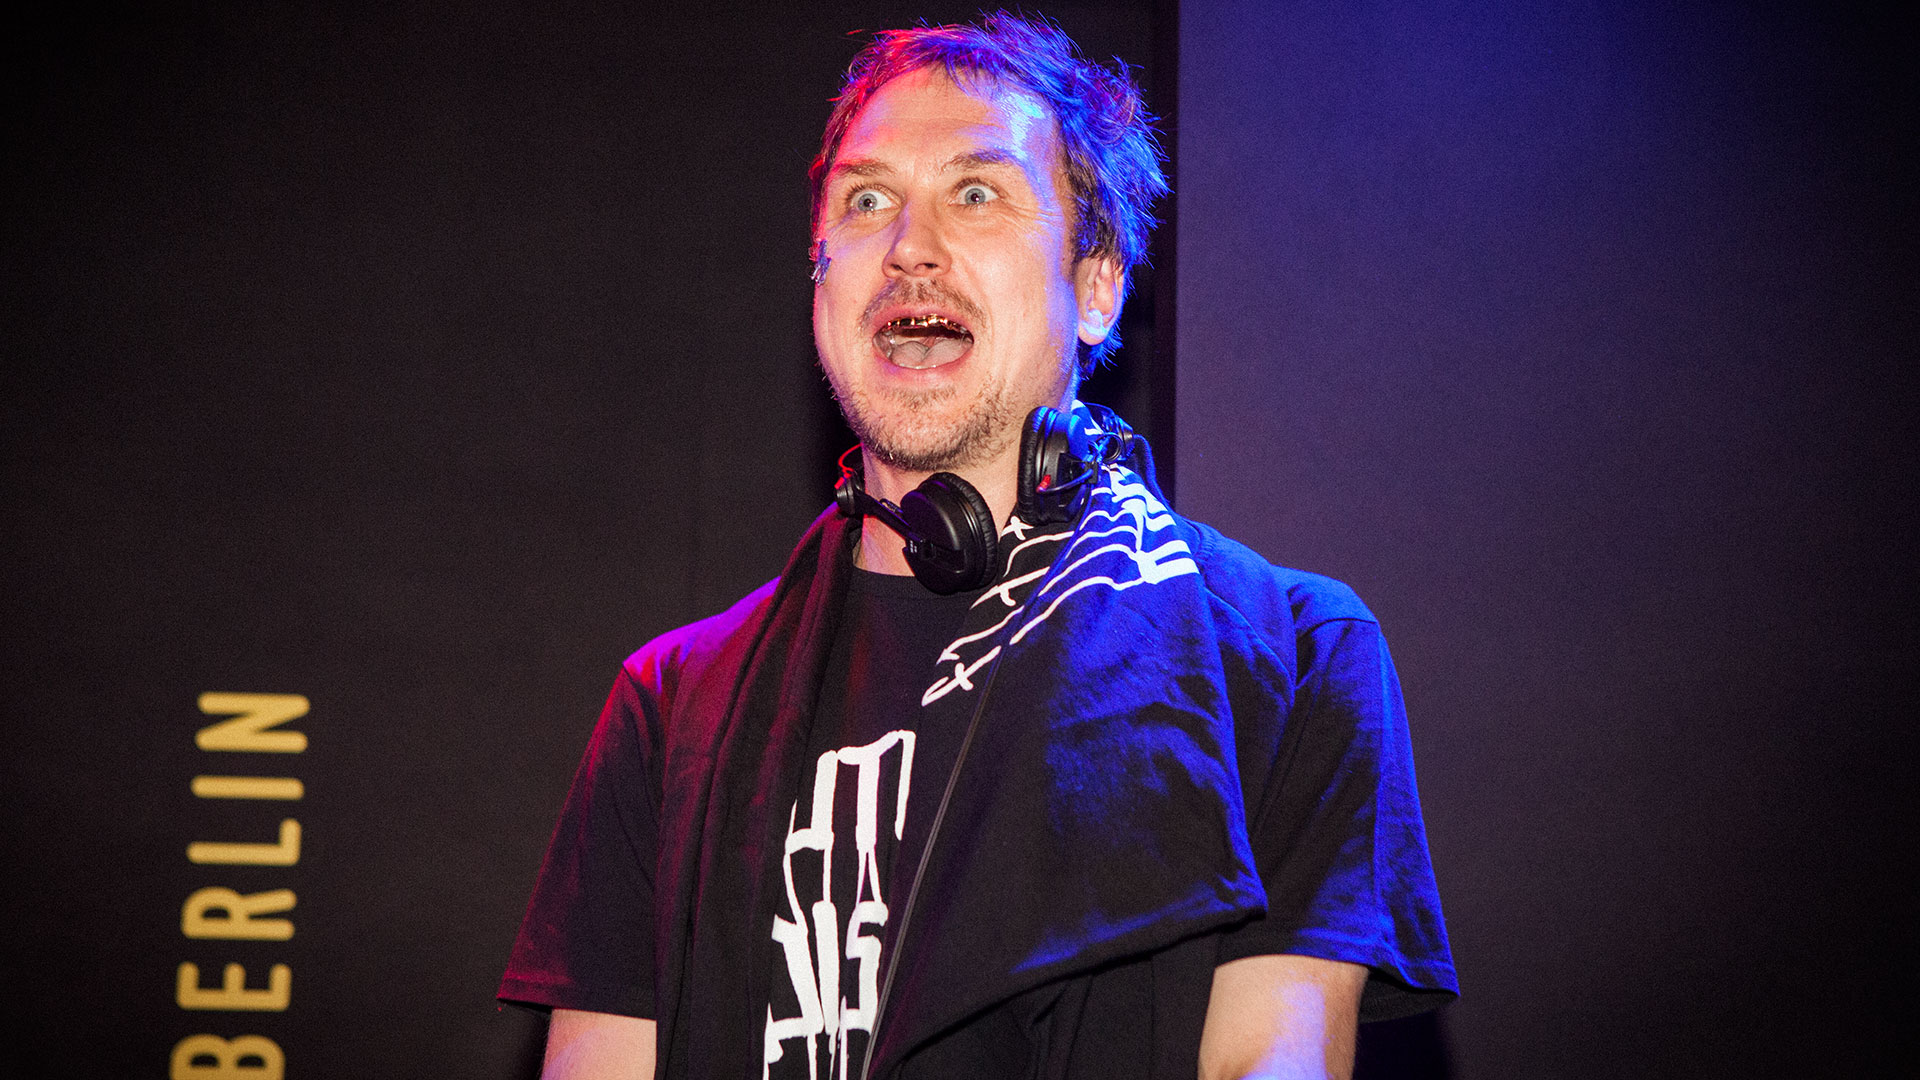 Schauspieler und DJ Lars Eidinger sorgte diese Woche für Stress im Netz.